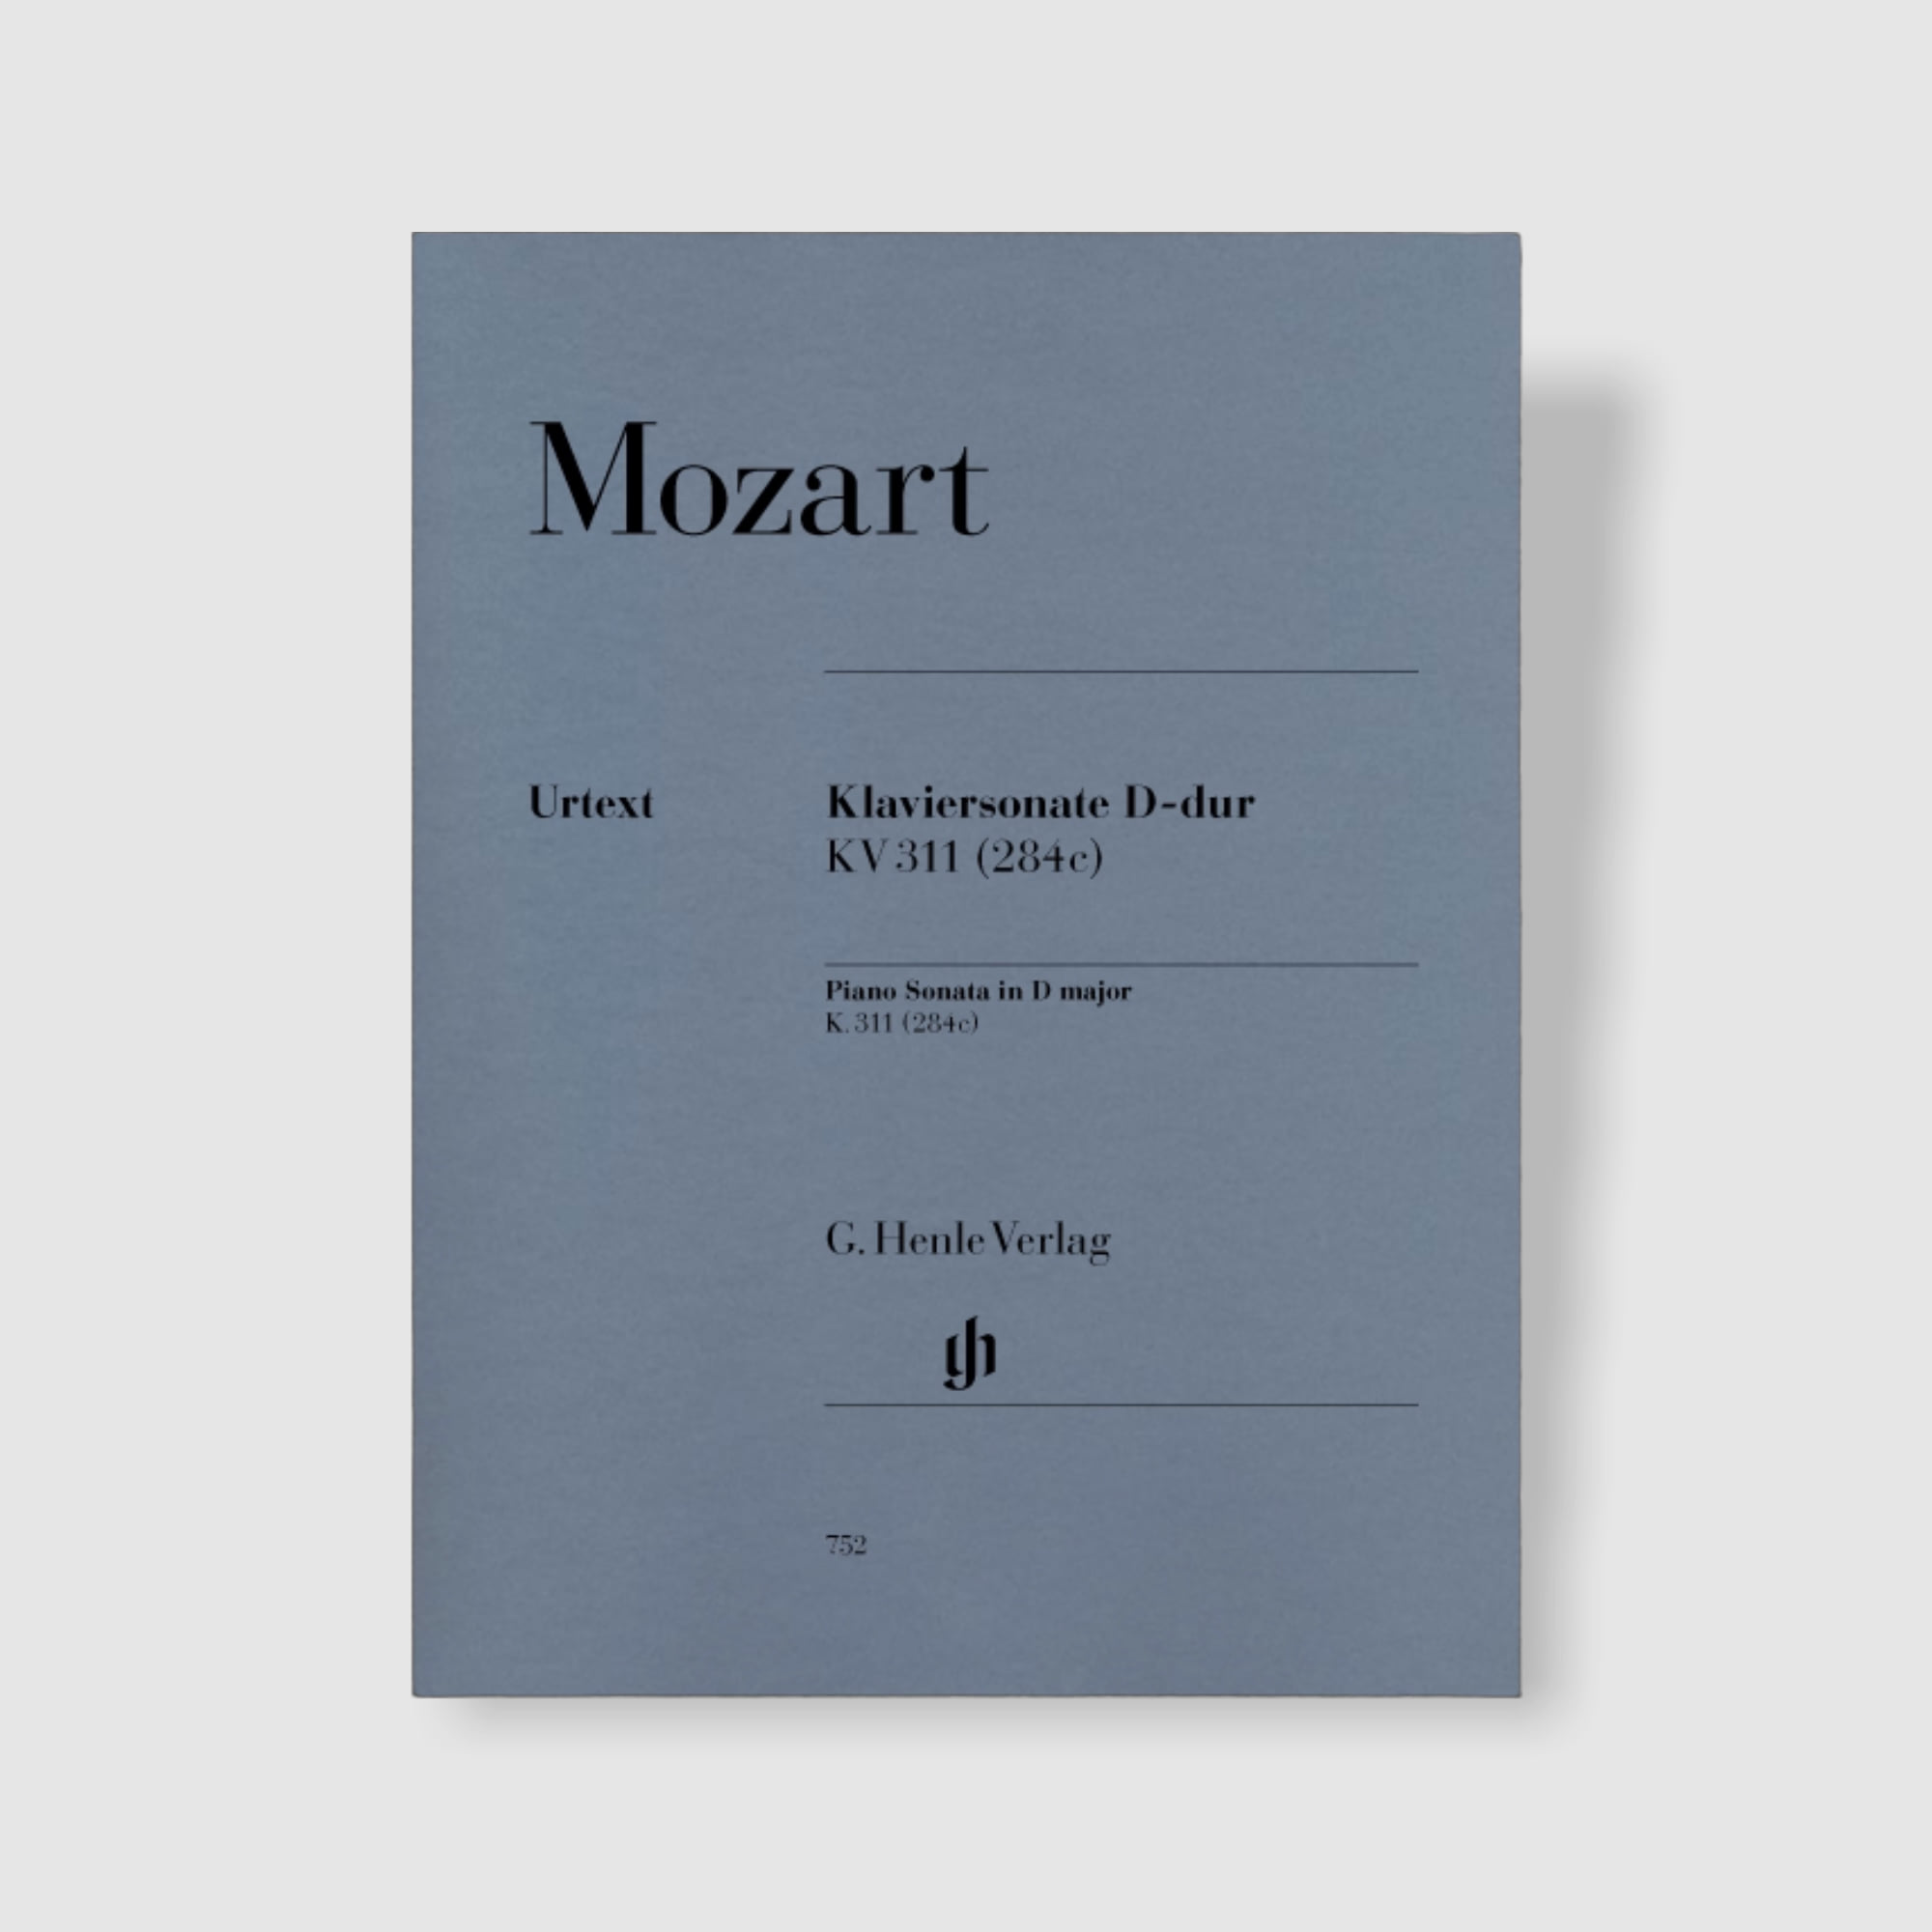 모차르트 피아노 소나타 in D Major, K. 311 (284c)